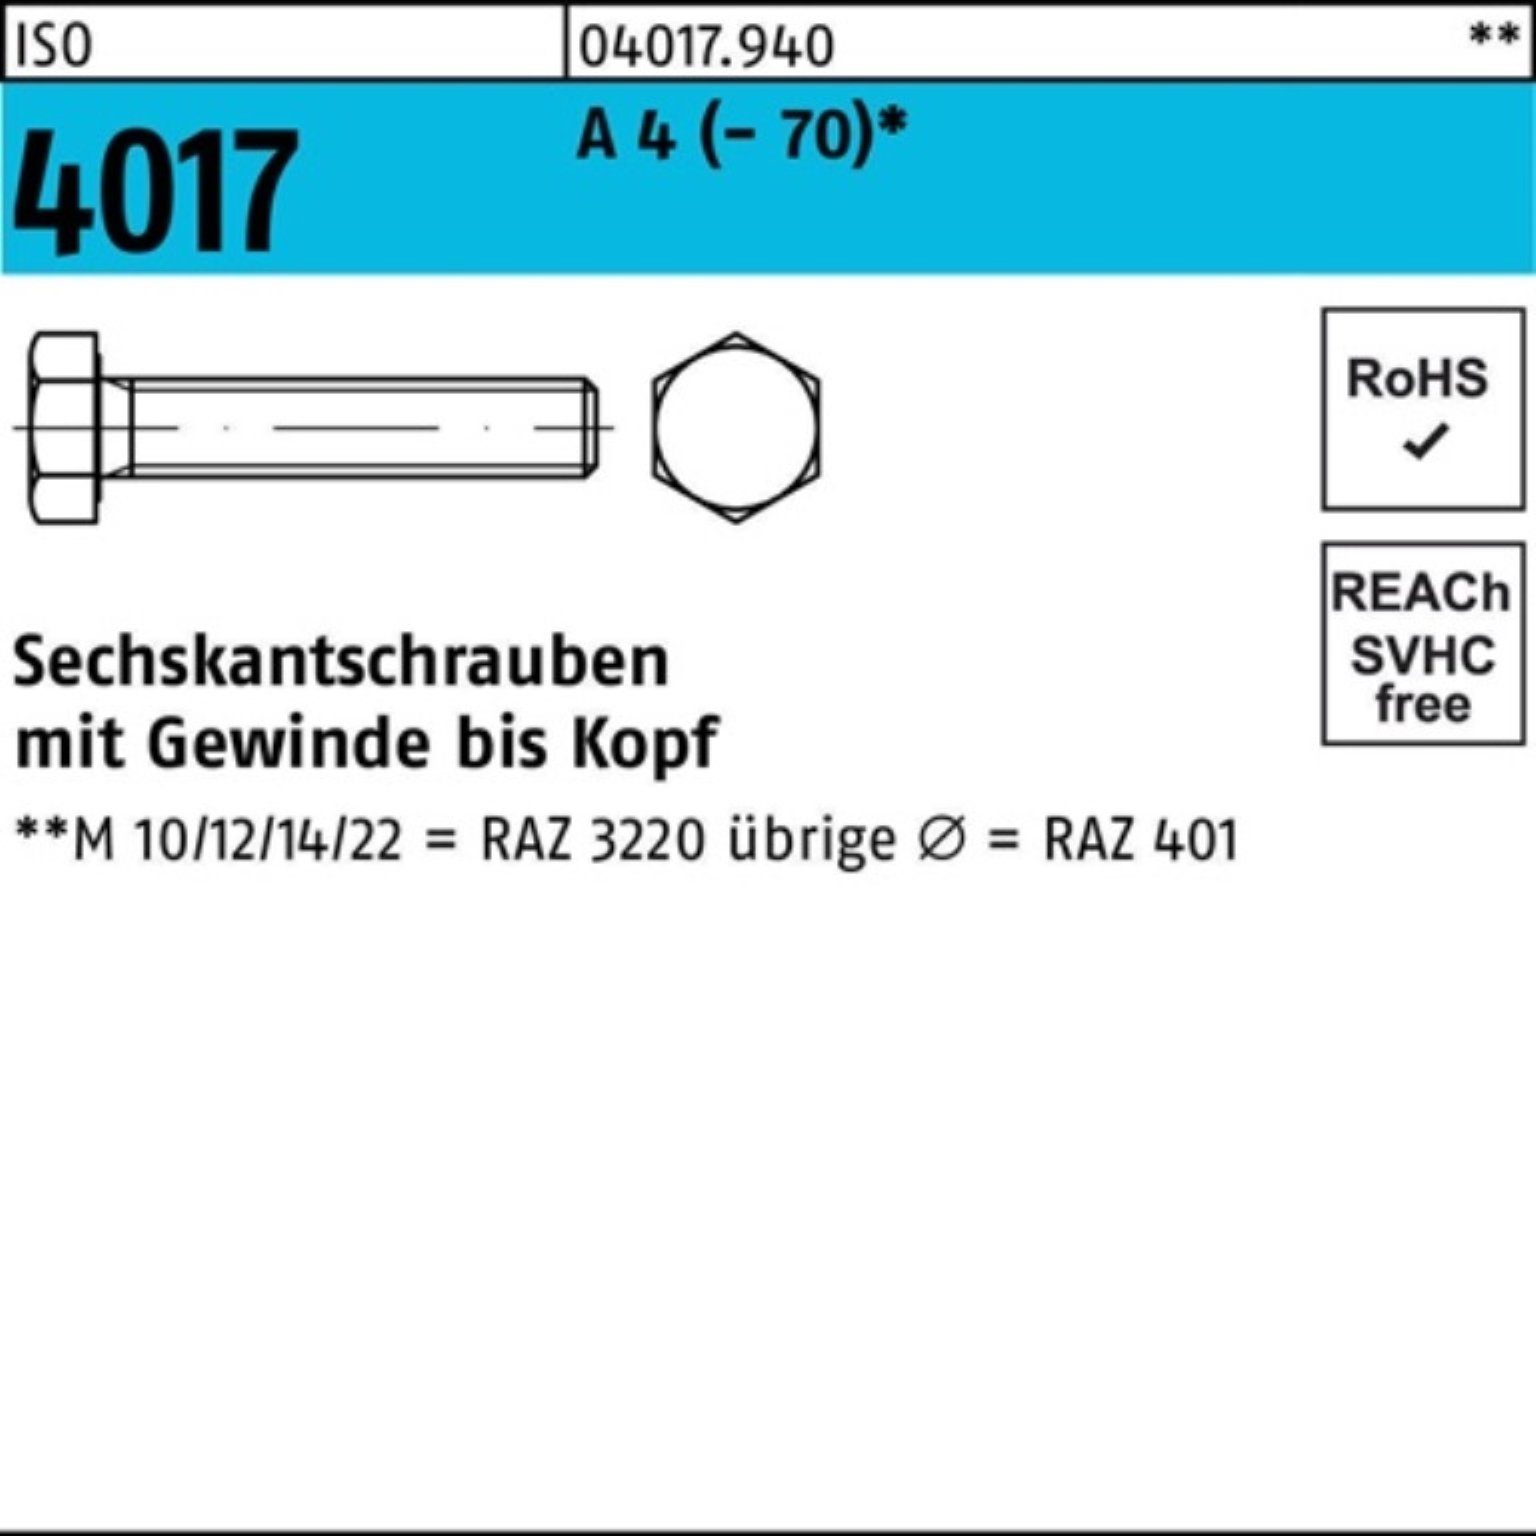 Bufab Sechskantschraube 100er Pack Sechskantschraube ISO 4017 VG M24x 130 A 4 (70) 1 Stück